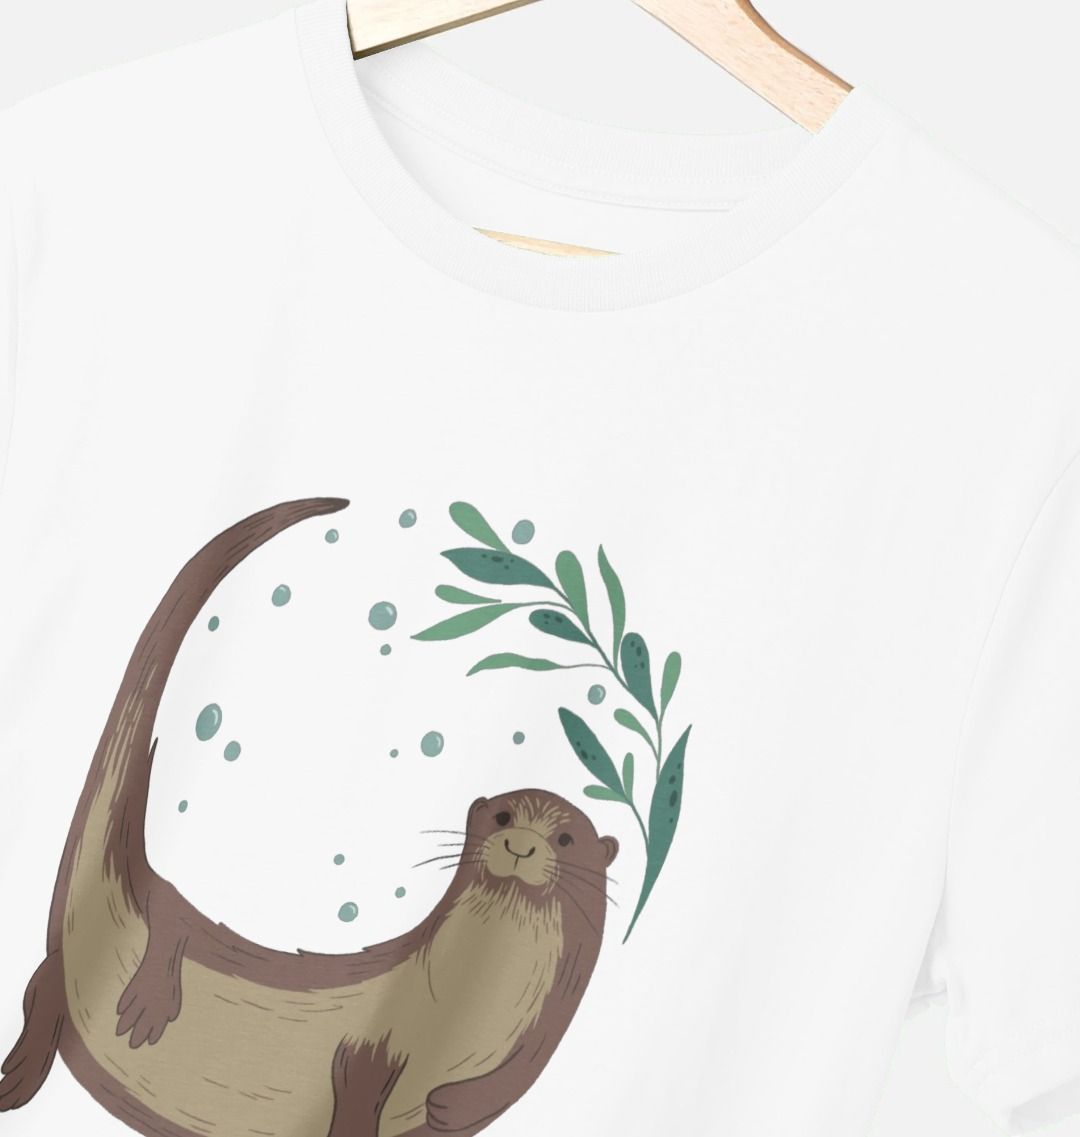 Otter t-shirt